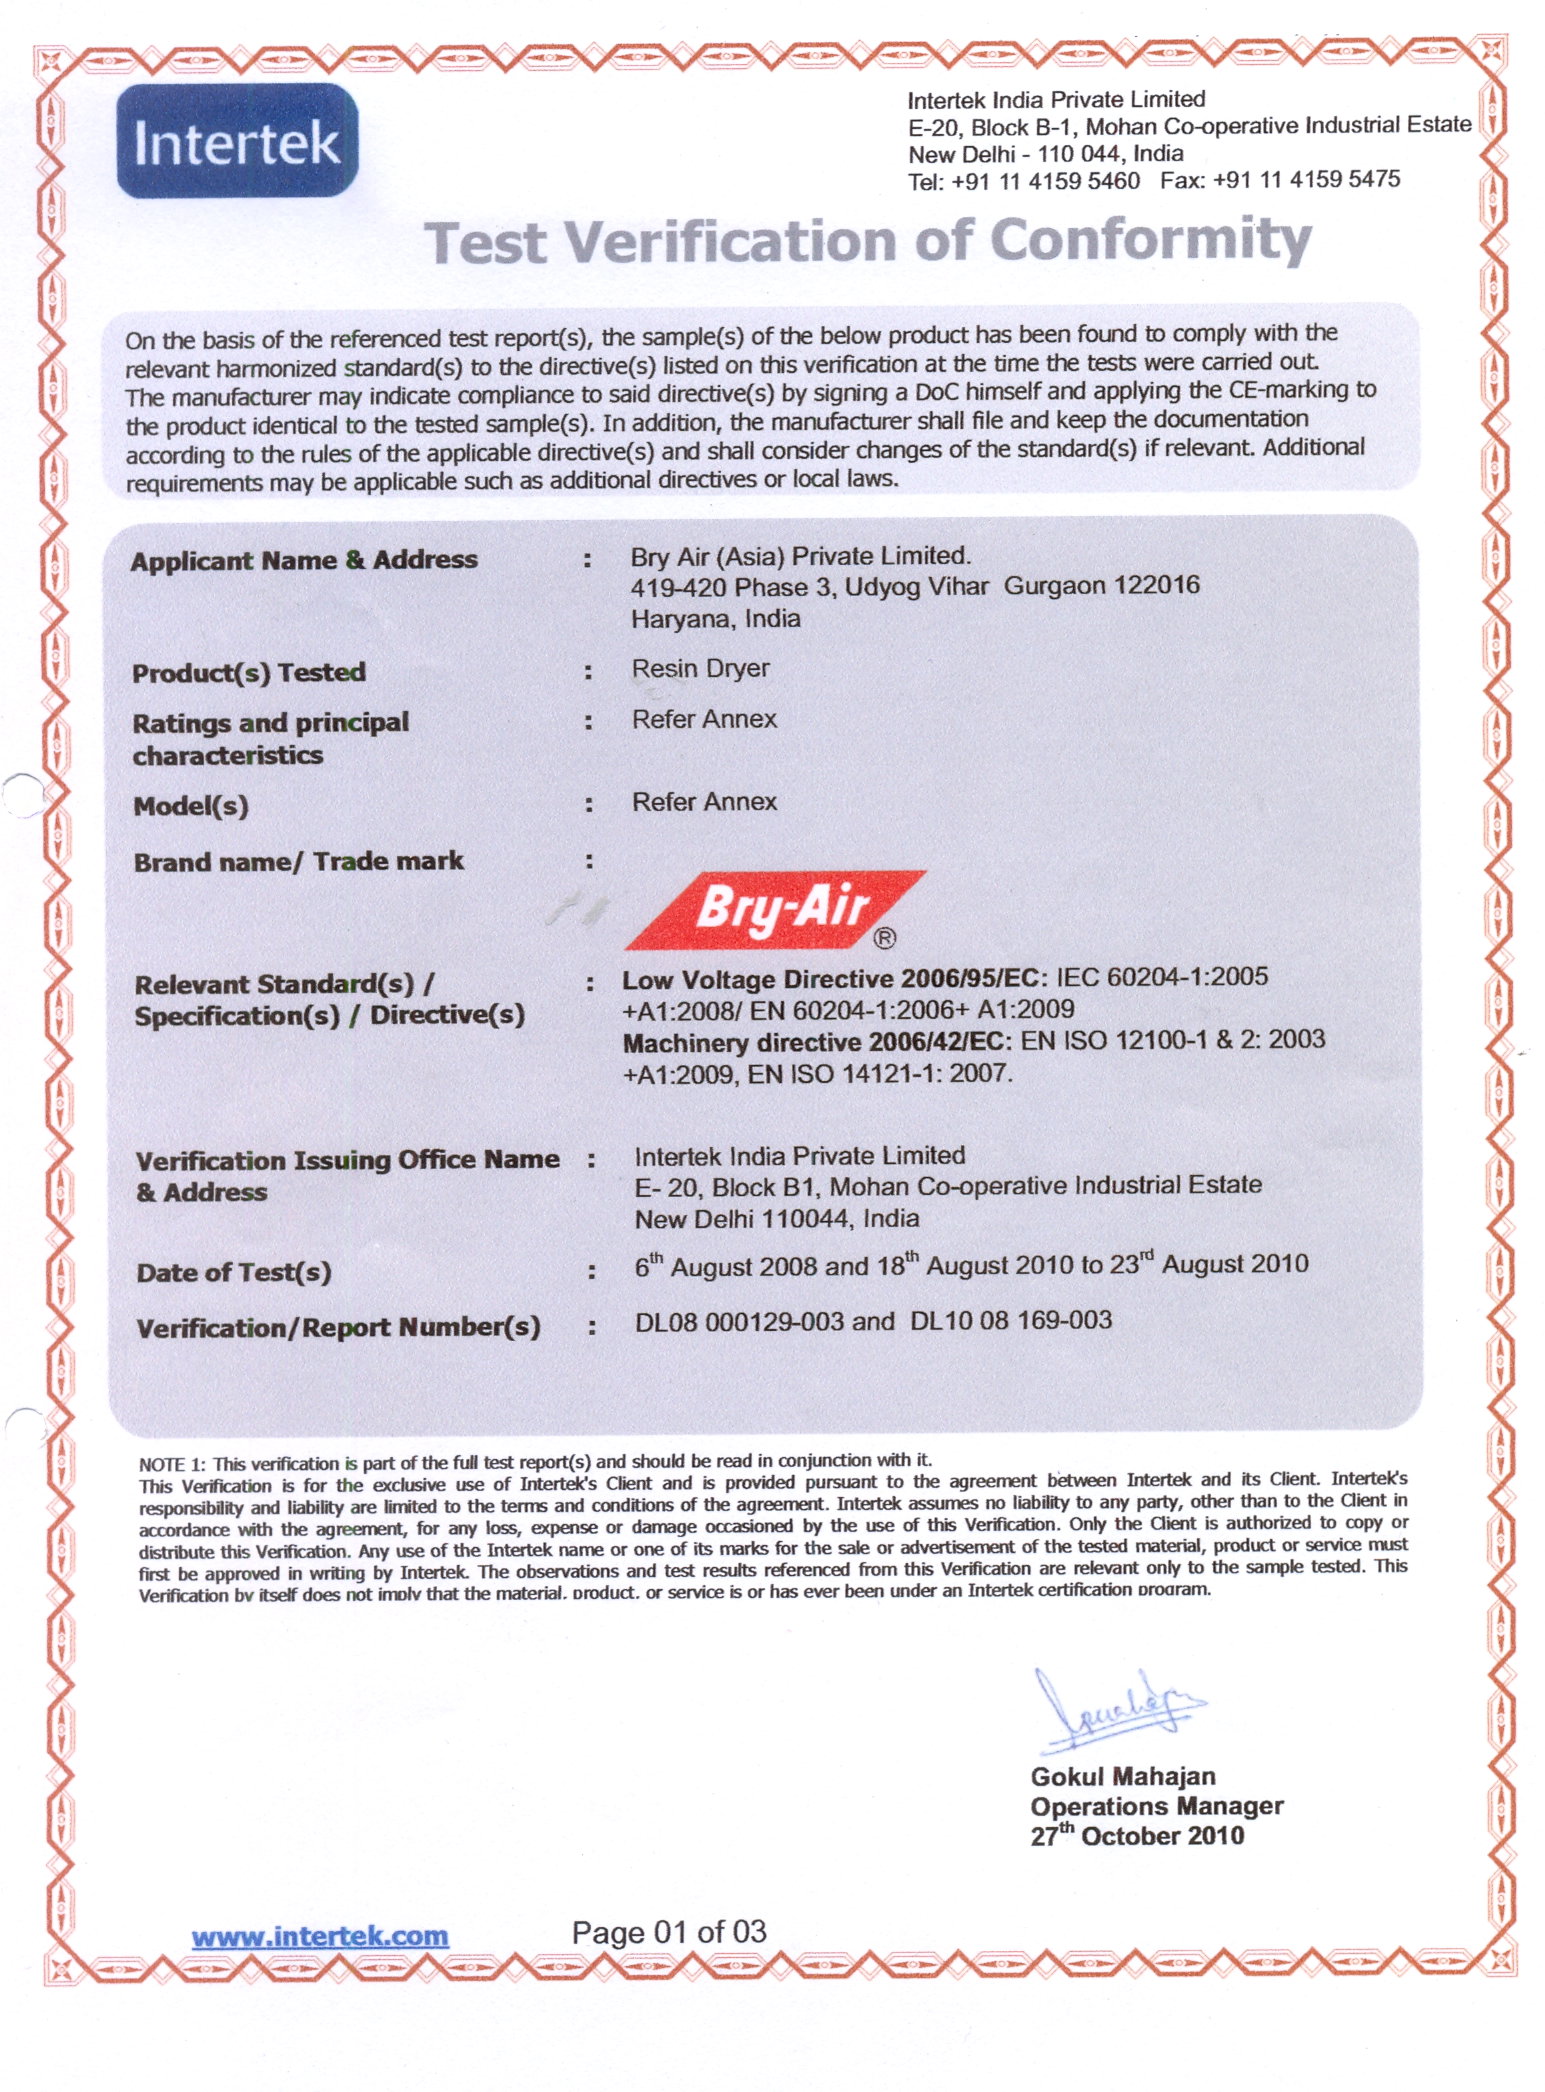 Intertek Certificate for Resin Dryers